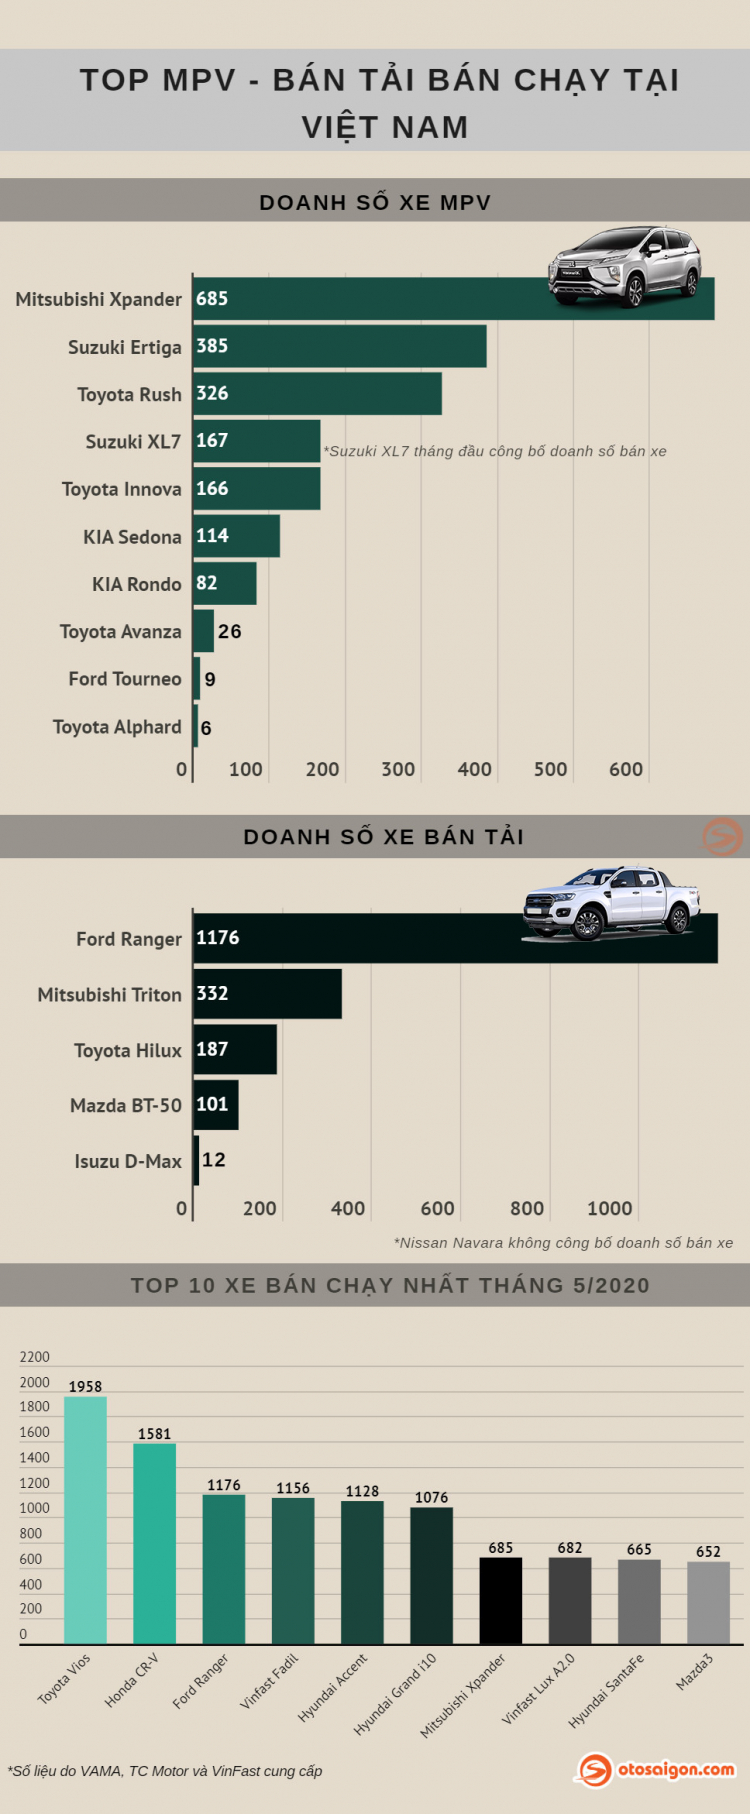 [Infographic] Top MPV/Bán tải bán chạy tại Việt Nam tháng 5/2020: Suzuki XL7 góp mặt doanh số